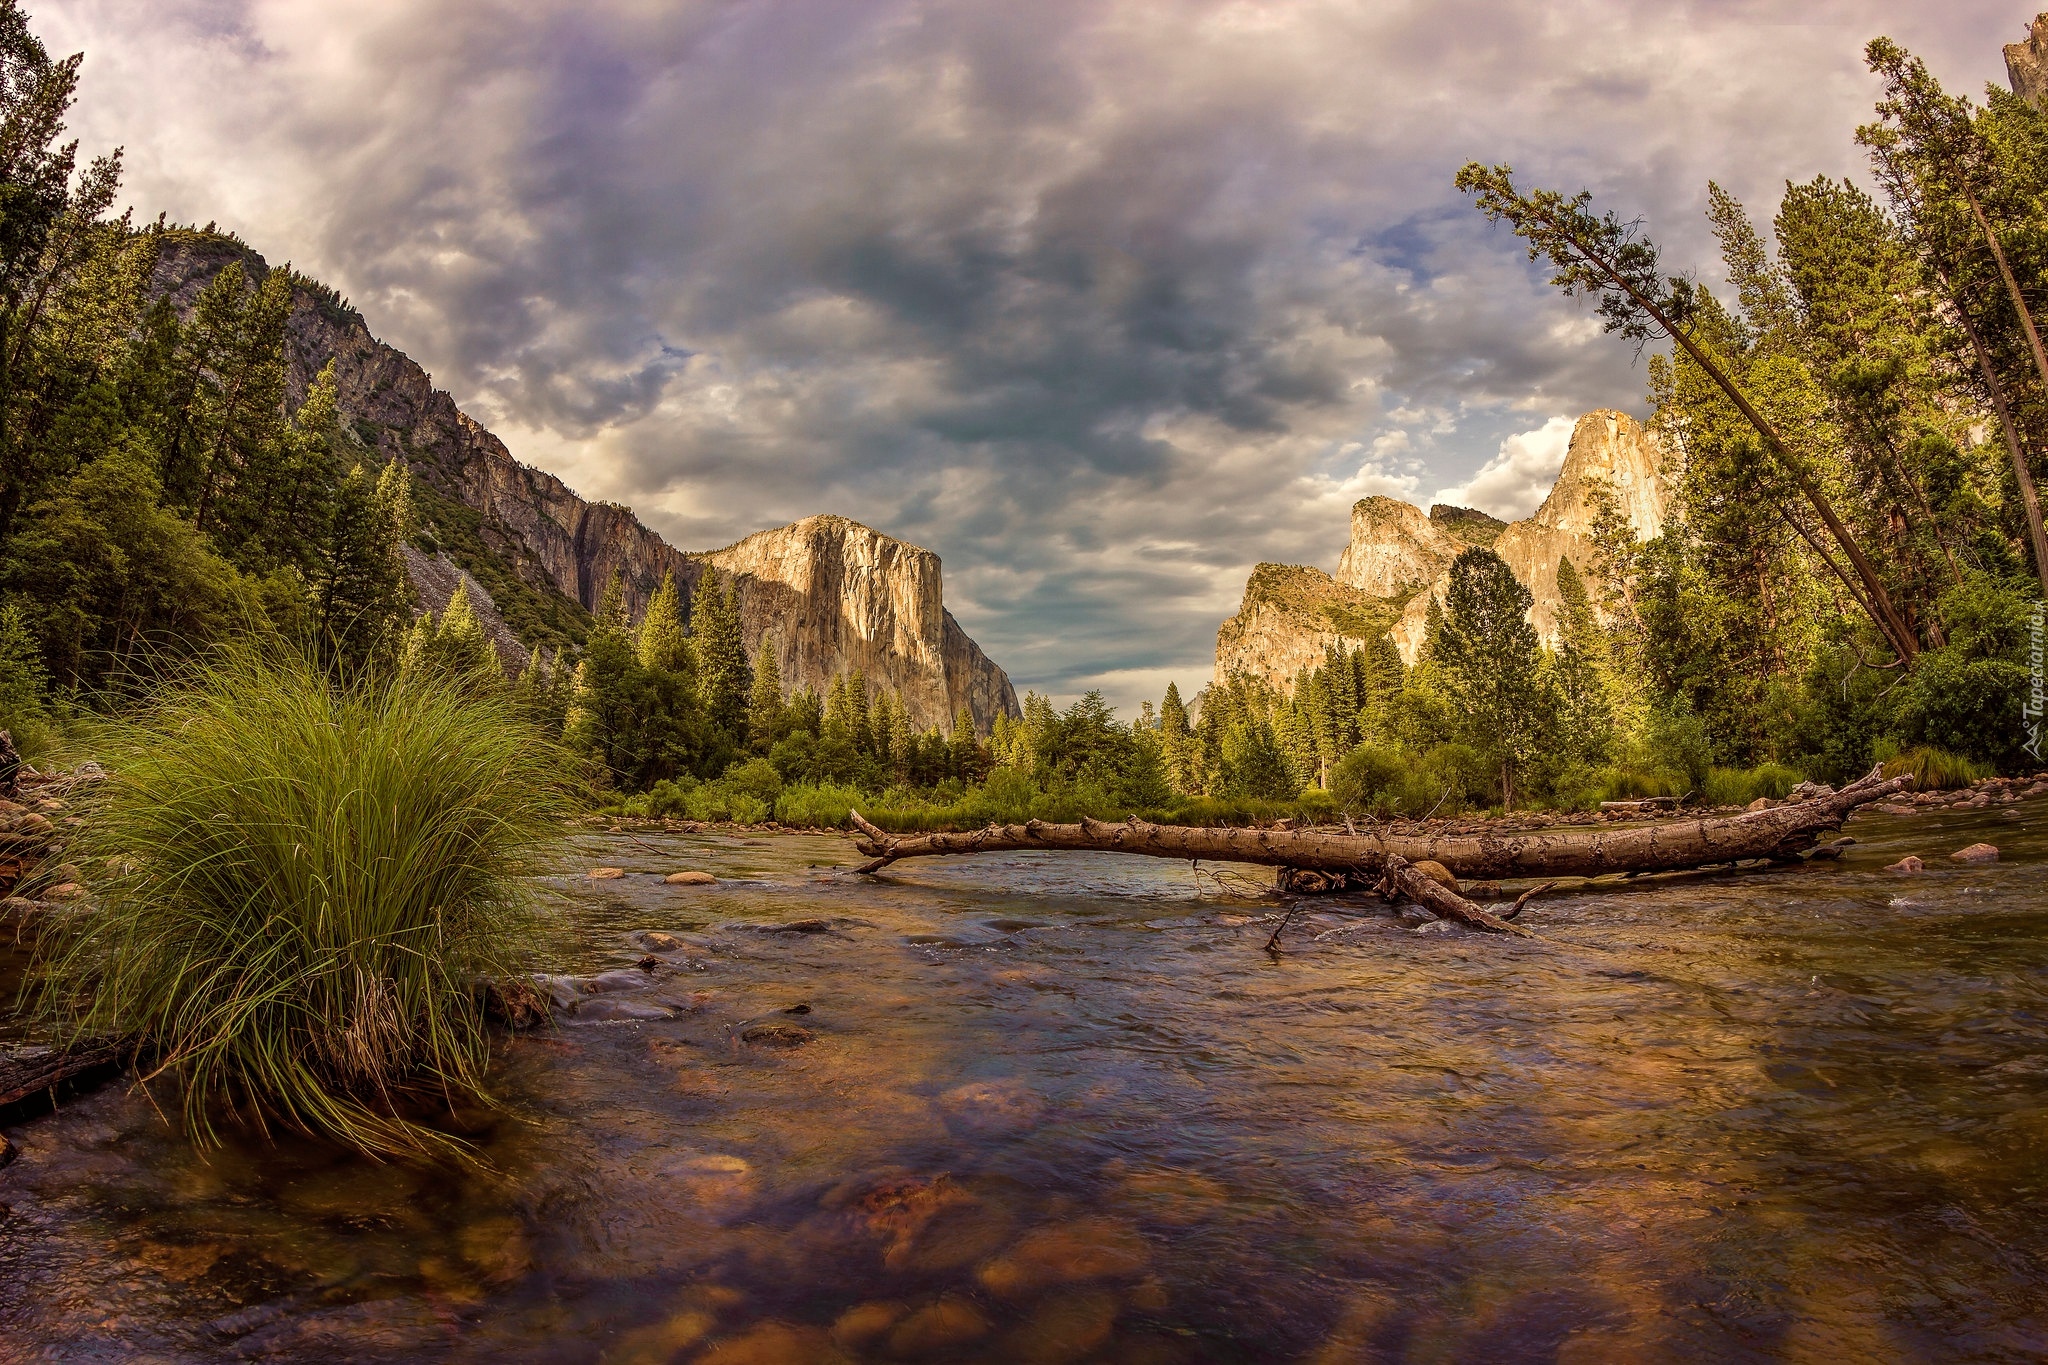 Stany Zjednoczone, Kalifornia, Park Narodowy Yosemite, Góry, Rzeka Merced, Kamienie, Rośliny, Drzewa, Suchy konar